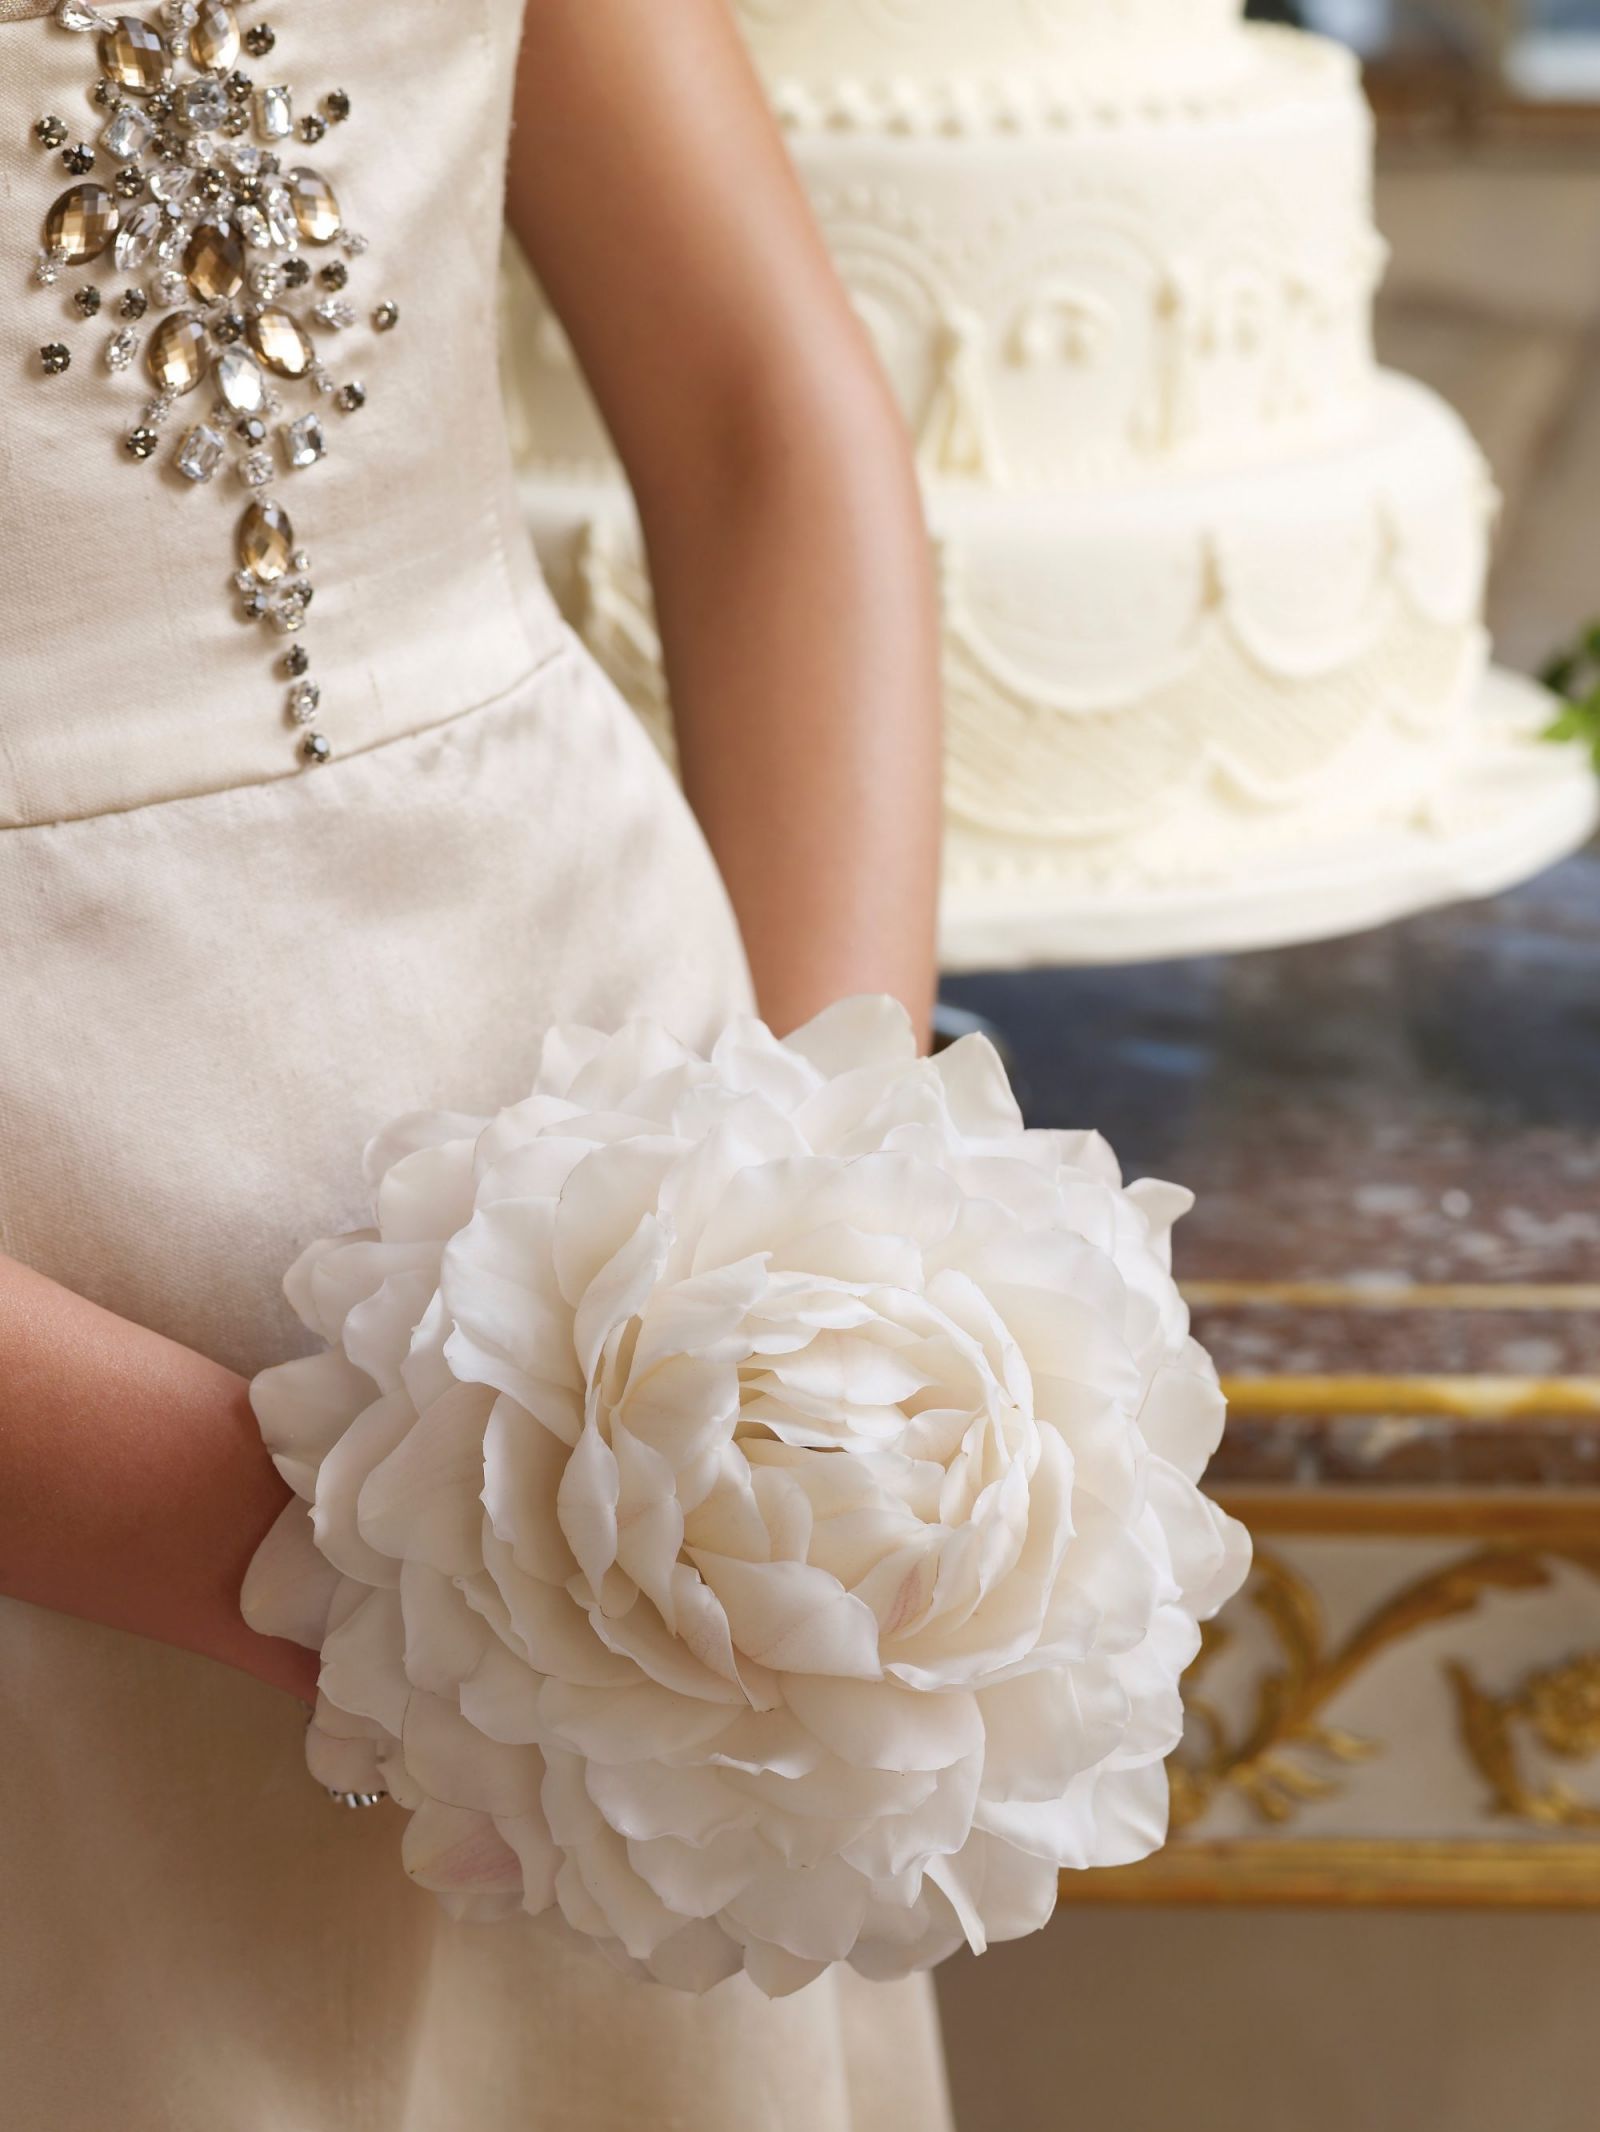 Artistic Bridal bouquet